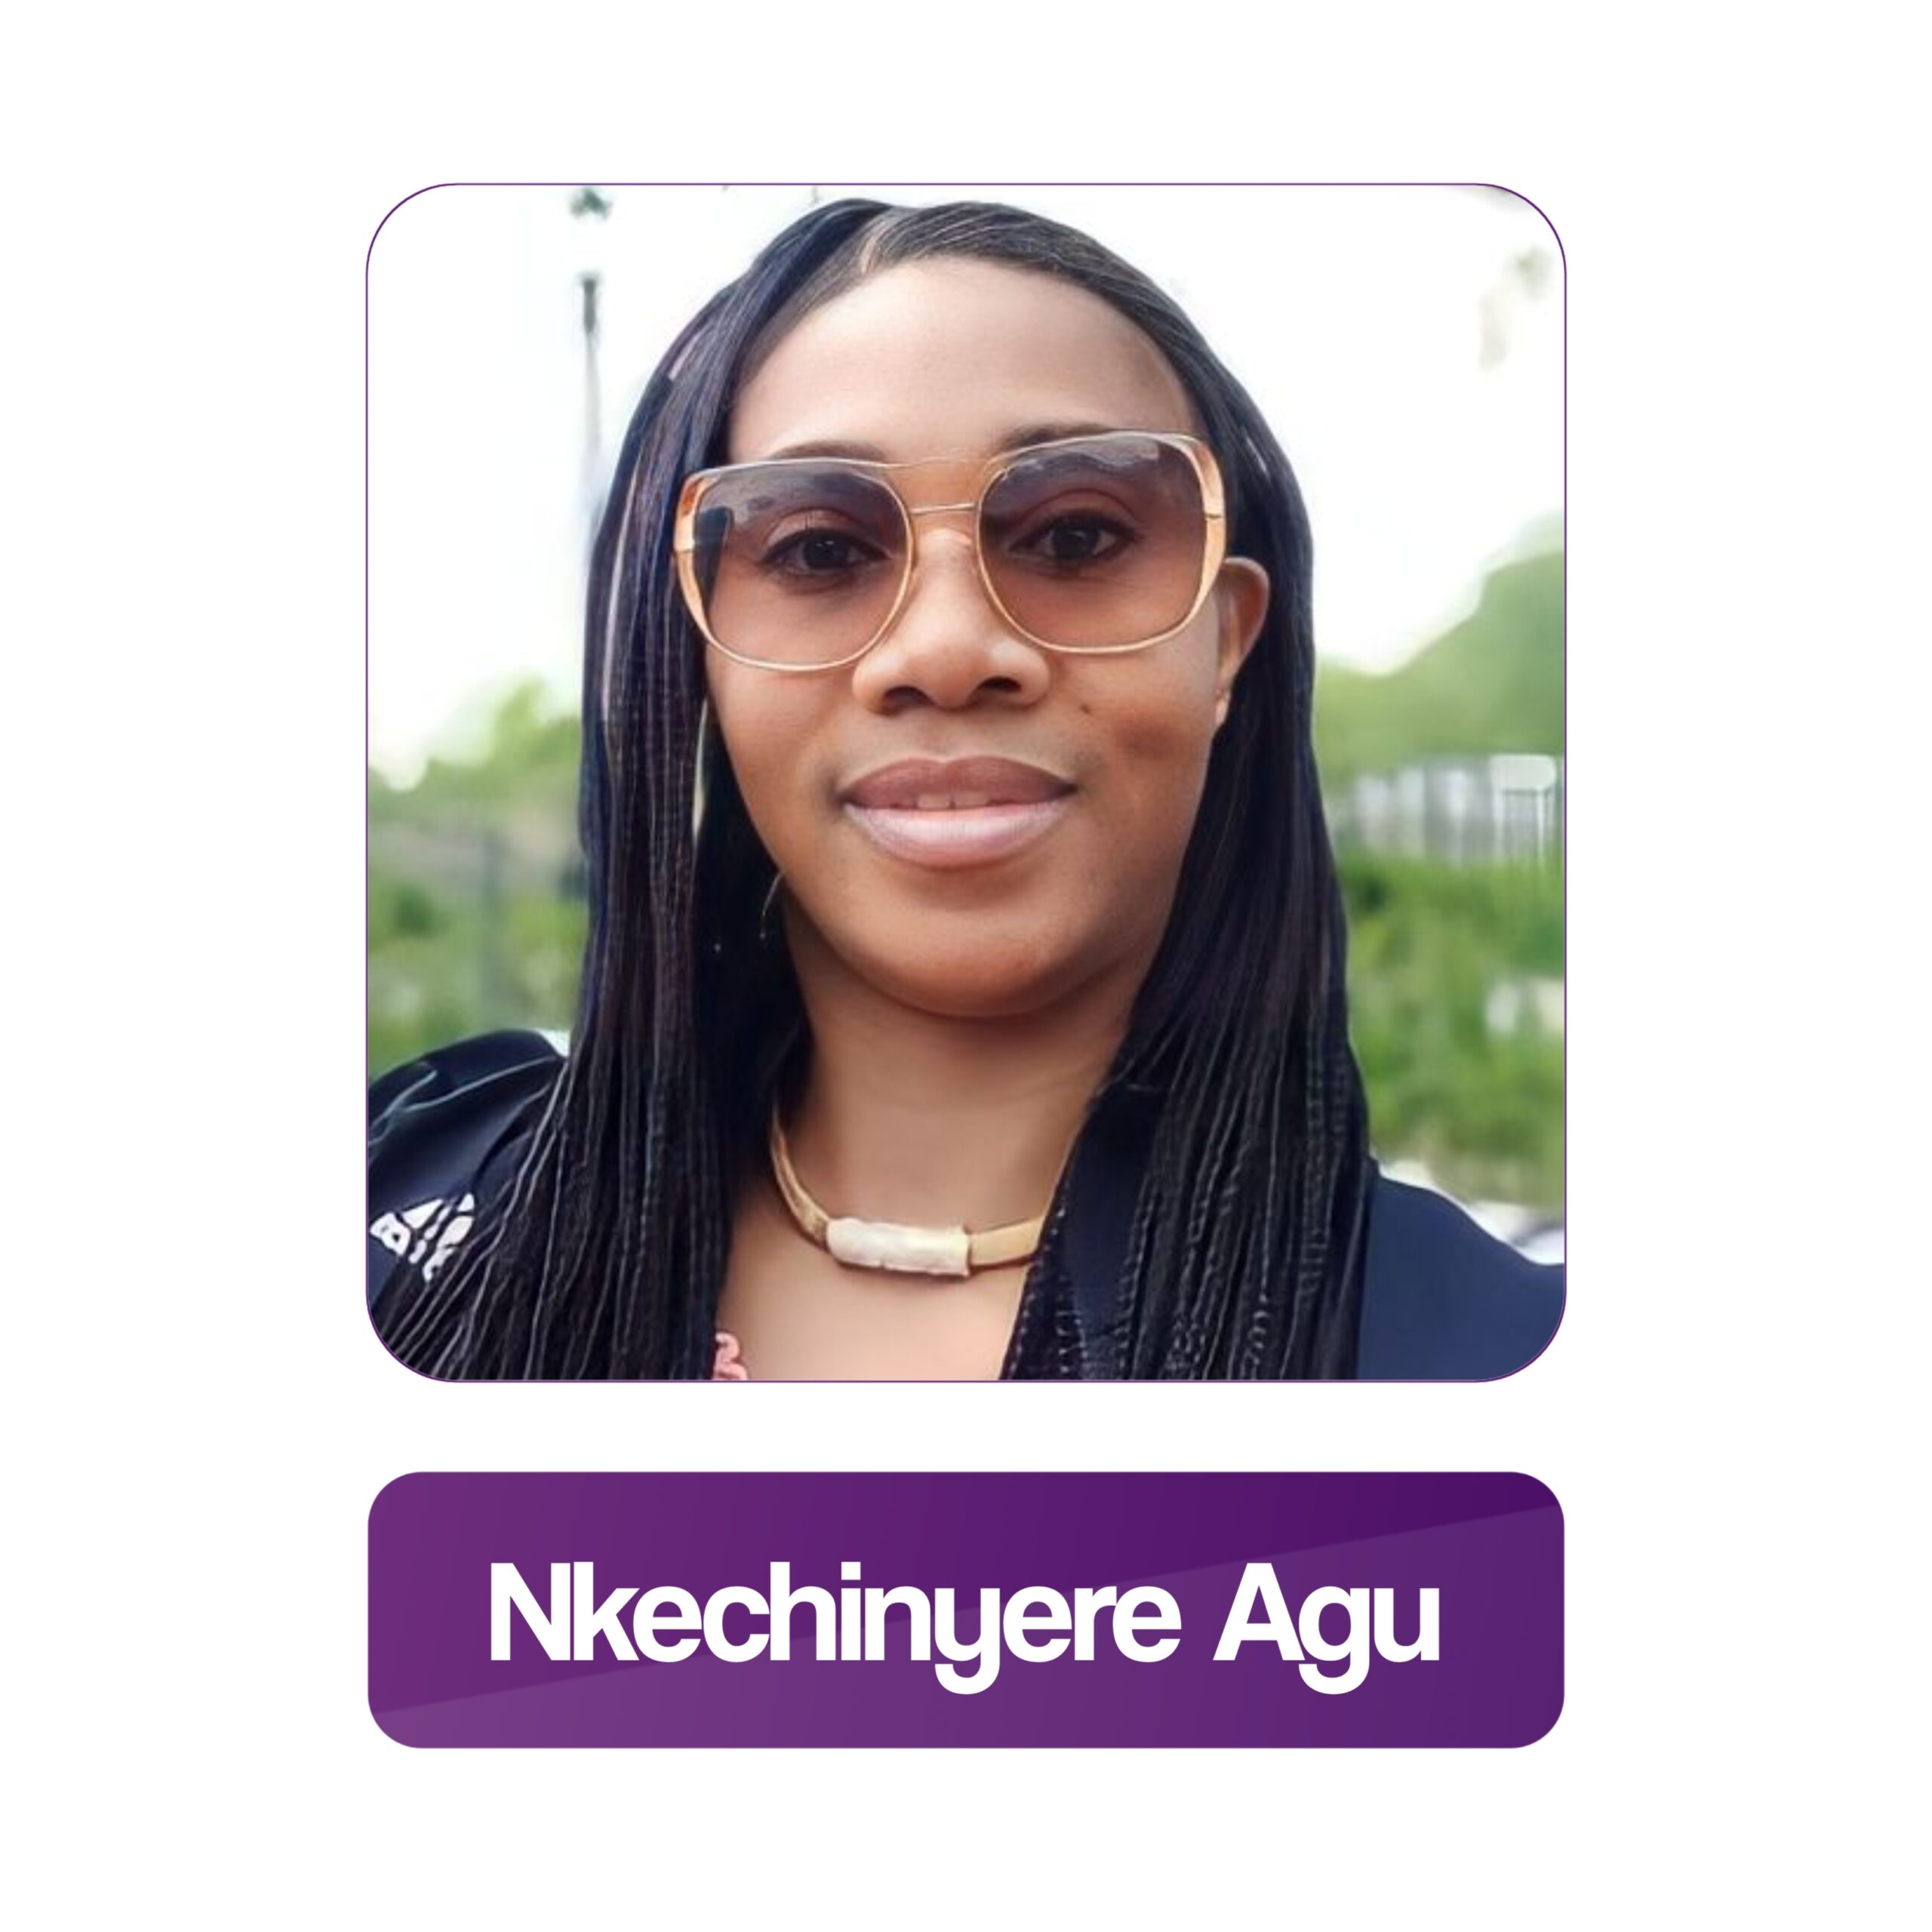 Nkechinyere Agu